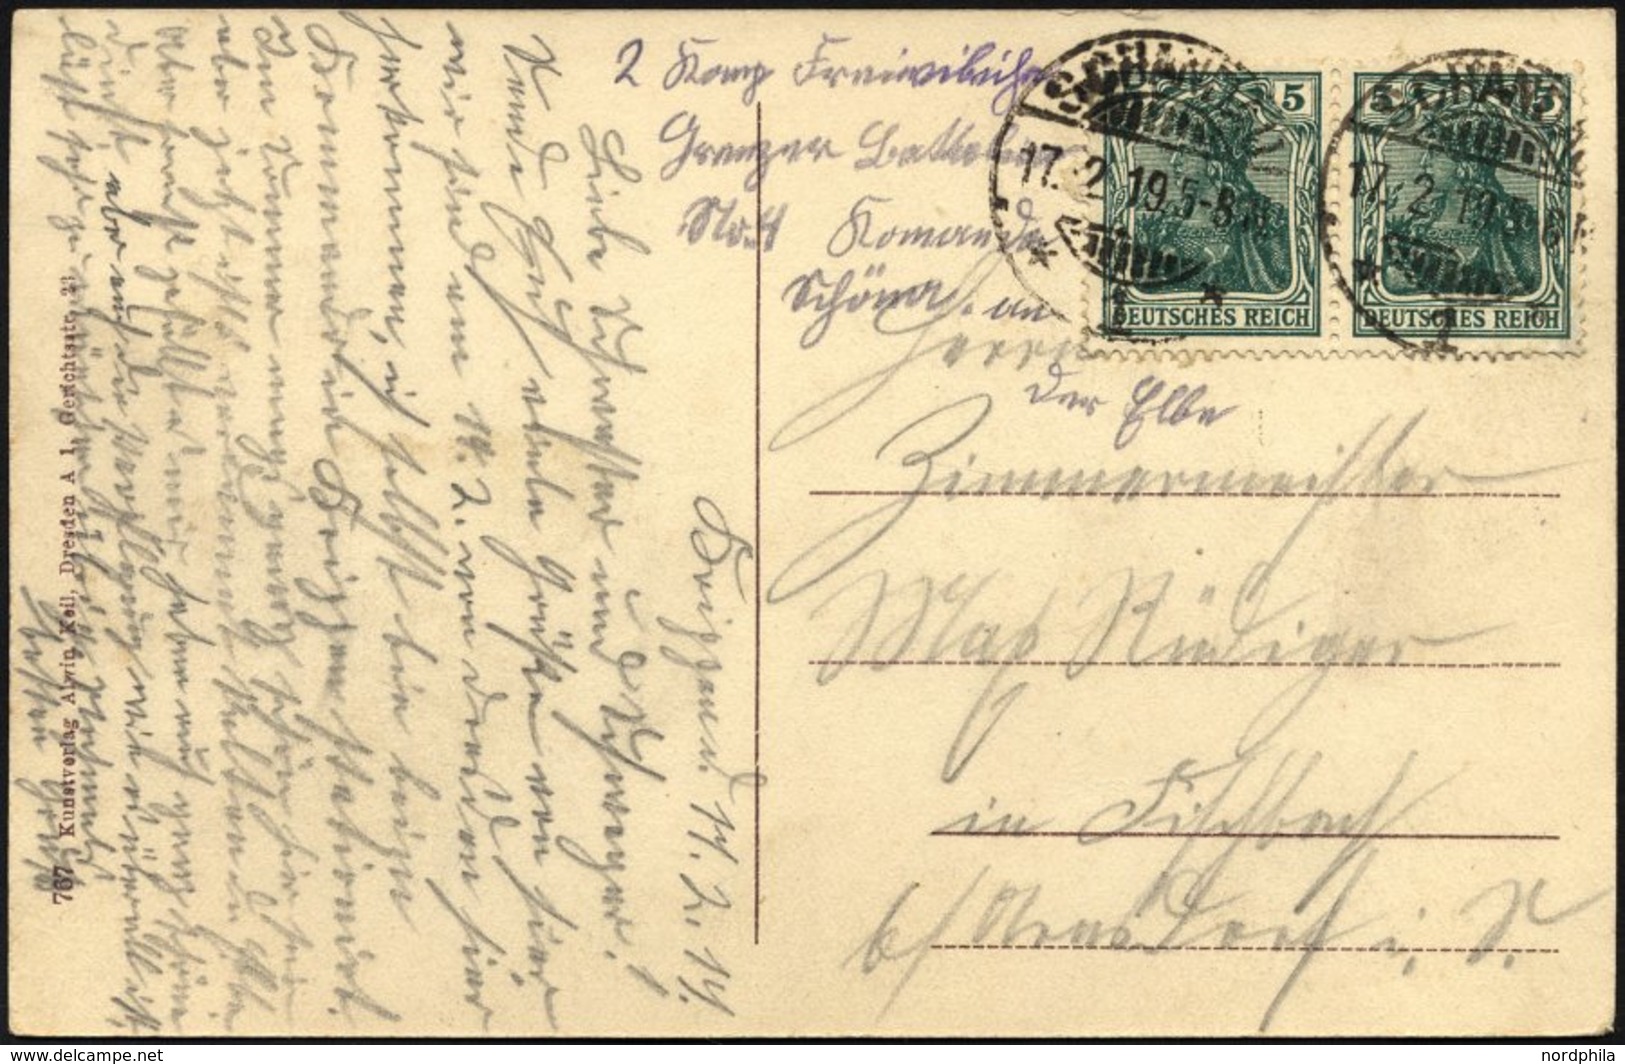 FELDPOST I.WK 70 Paar BRIEF, 1919, 5 Pf. Grün Im Waagerechten Paar Auf Postkarte Aus SCHANDAU/Sächs. Schweiz Mit Handsch - Used Stamps